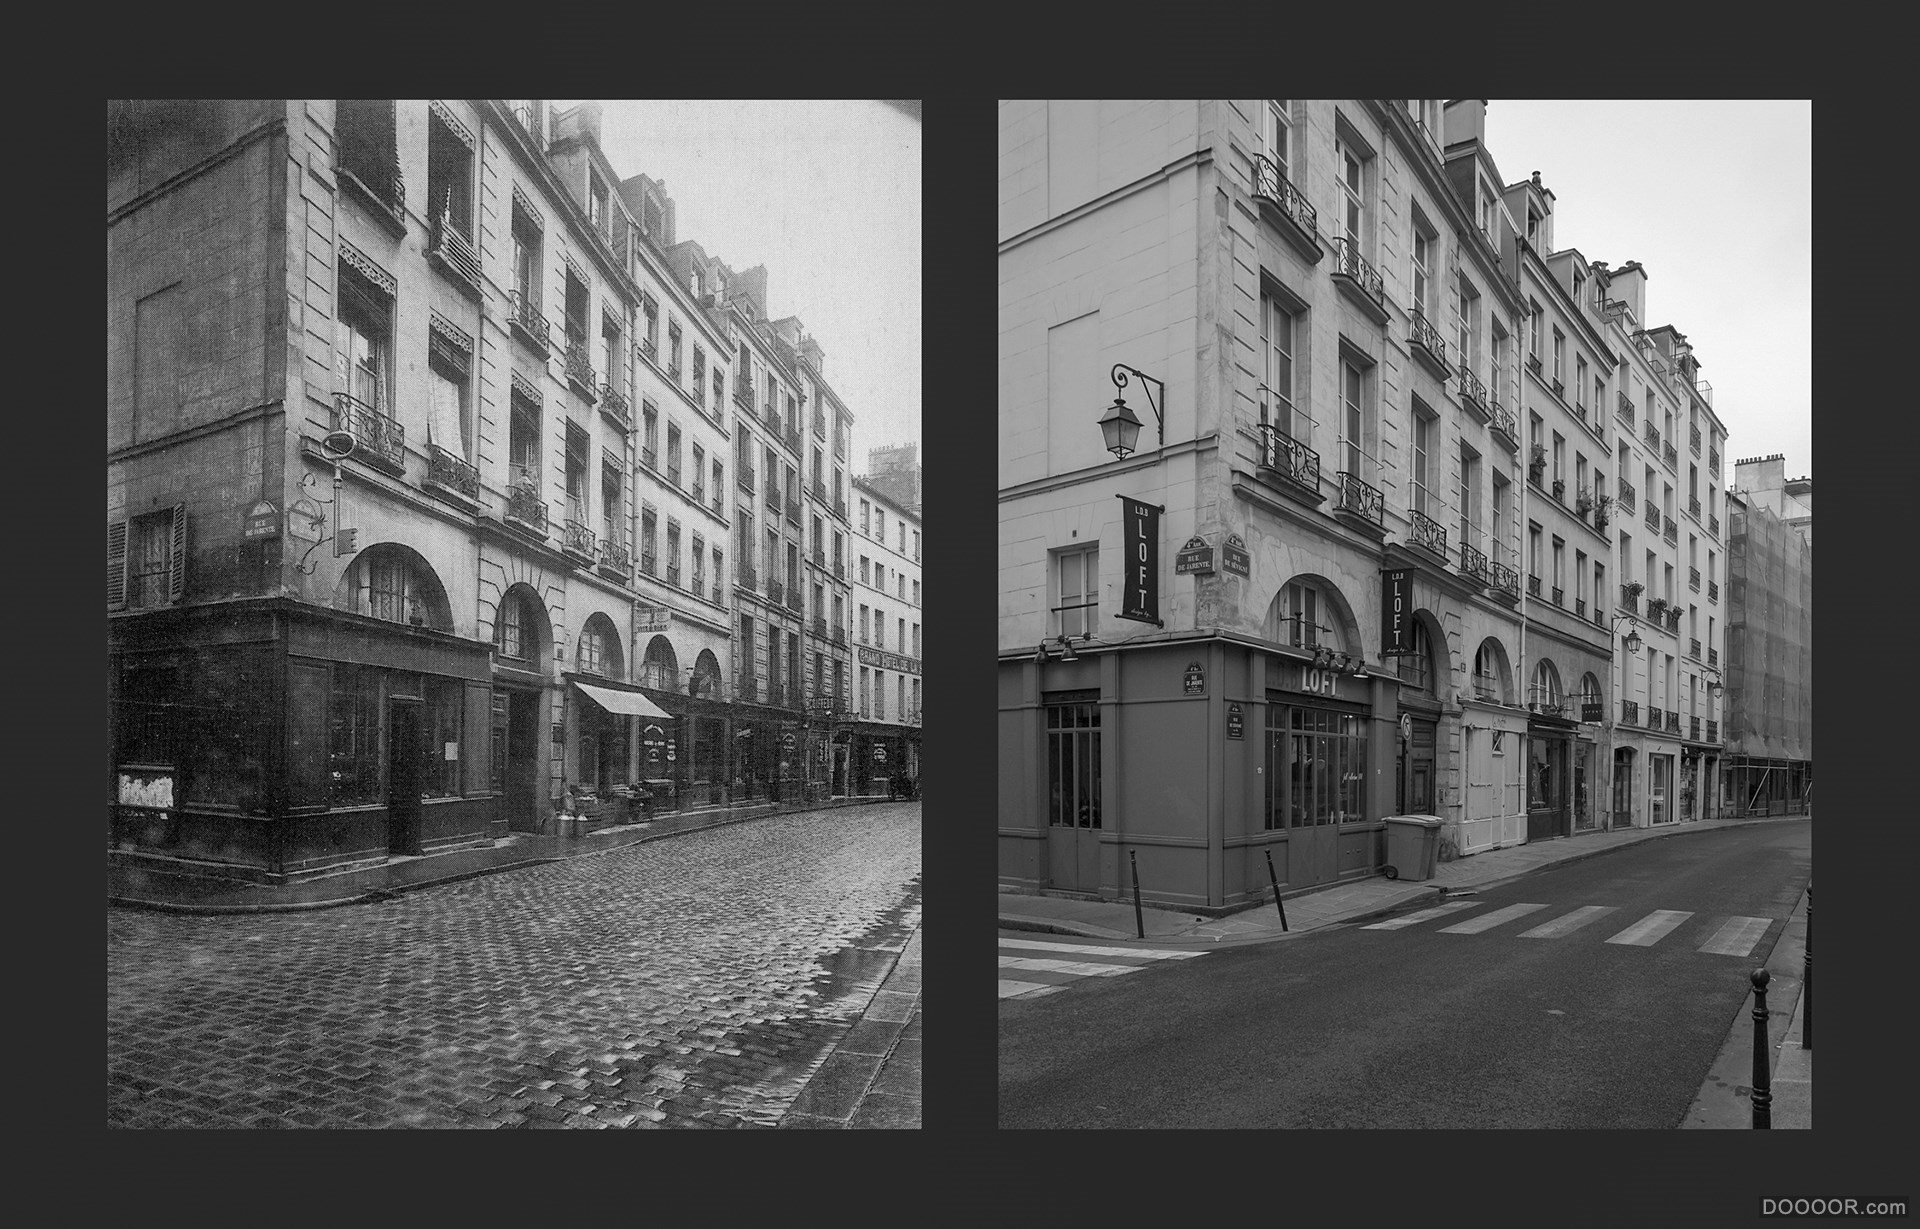 过去与现在-巴黎街头照片对比 [50P] (29).jpg